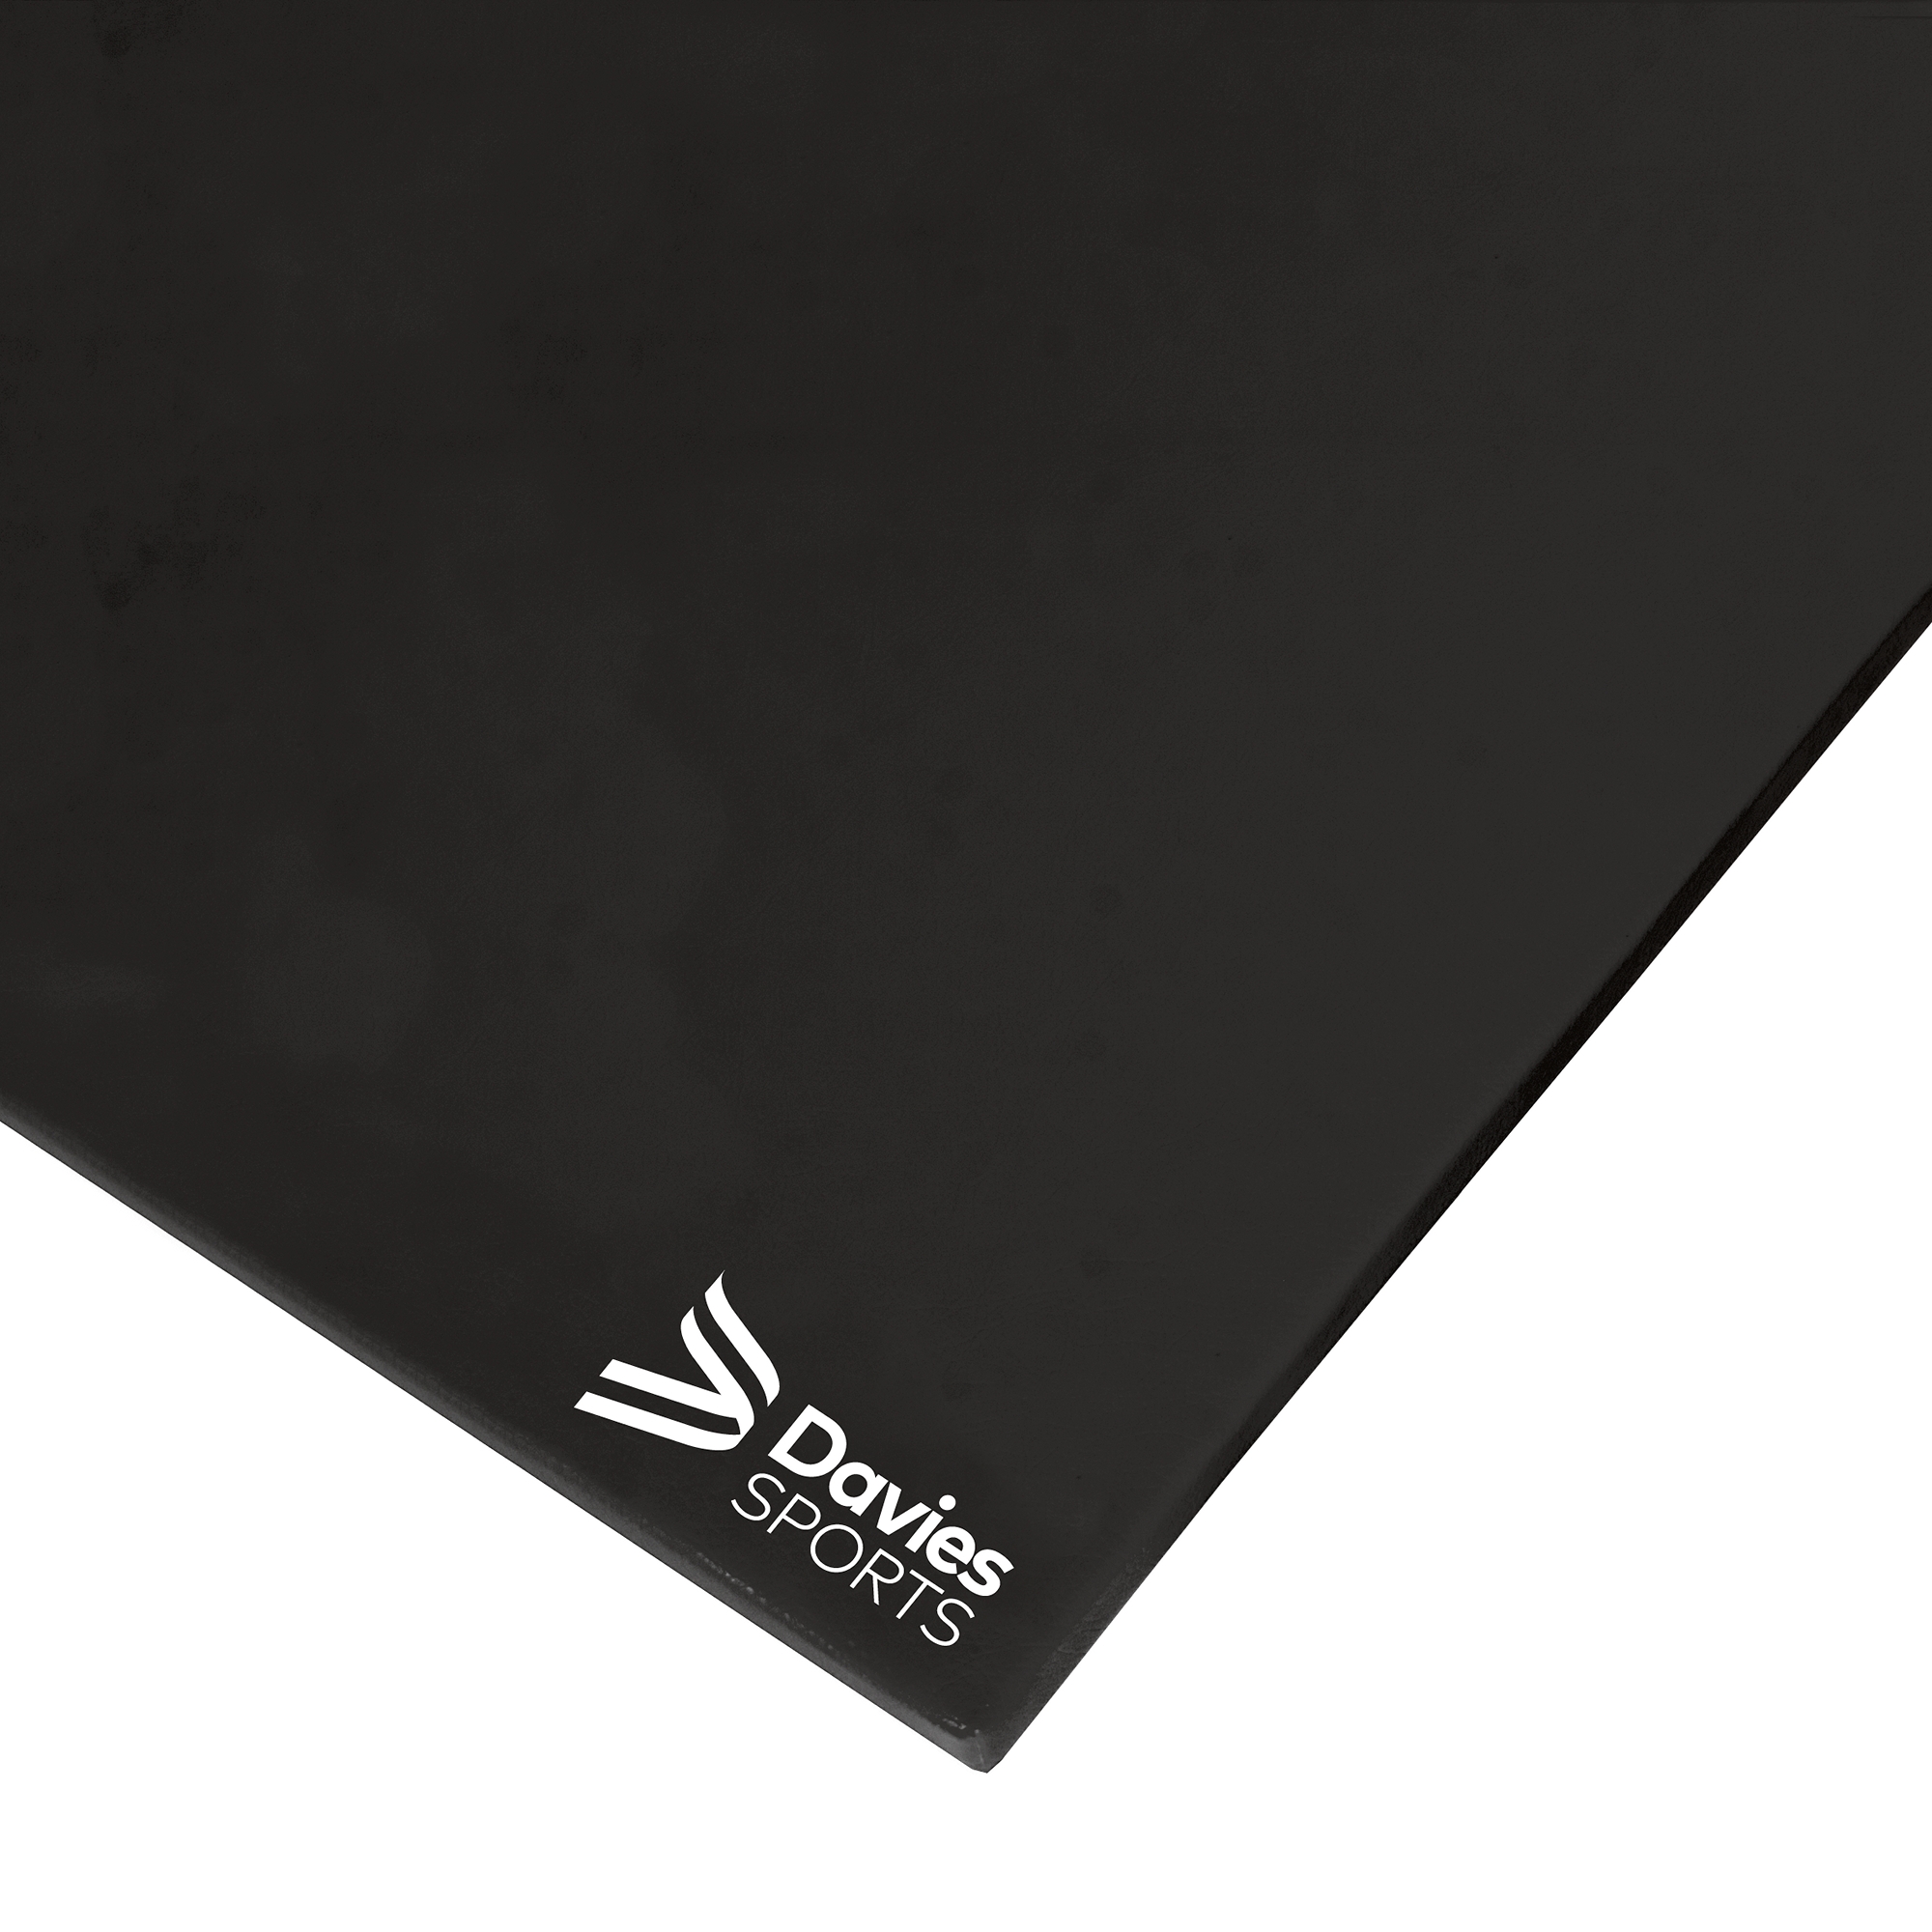 Davies Sports Superlight Blend Mat Standard Black - 1.22x0.91x32